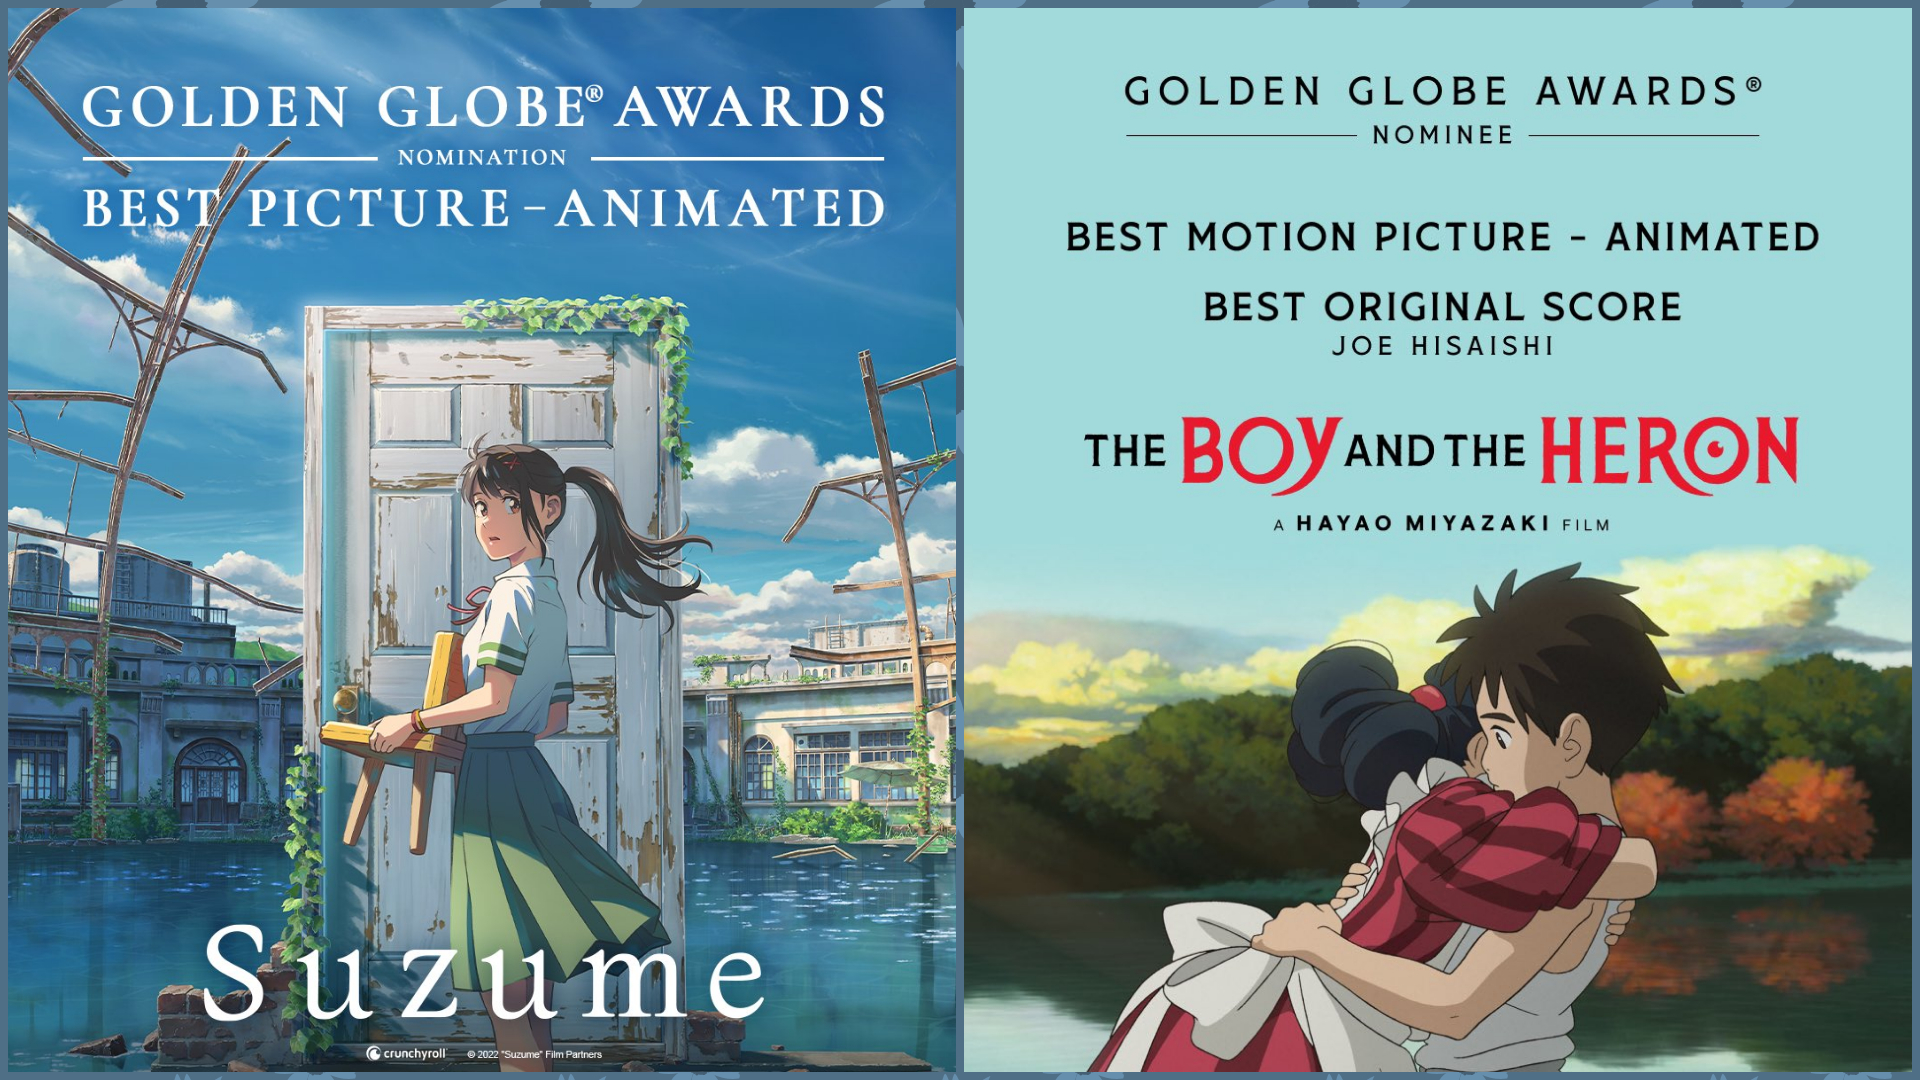 The 2020  Golden Issue Award for Best Anime Film